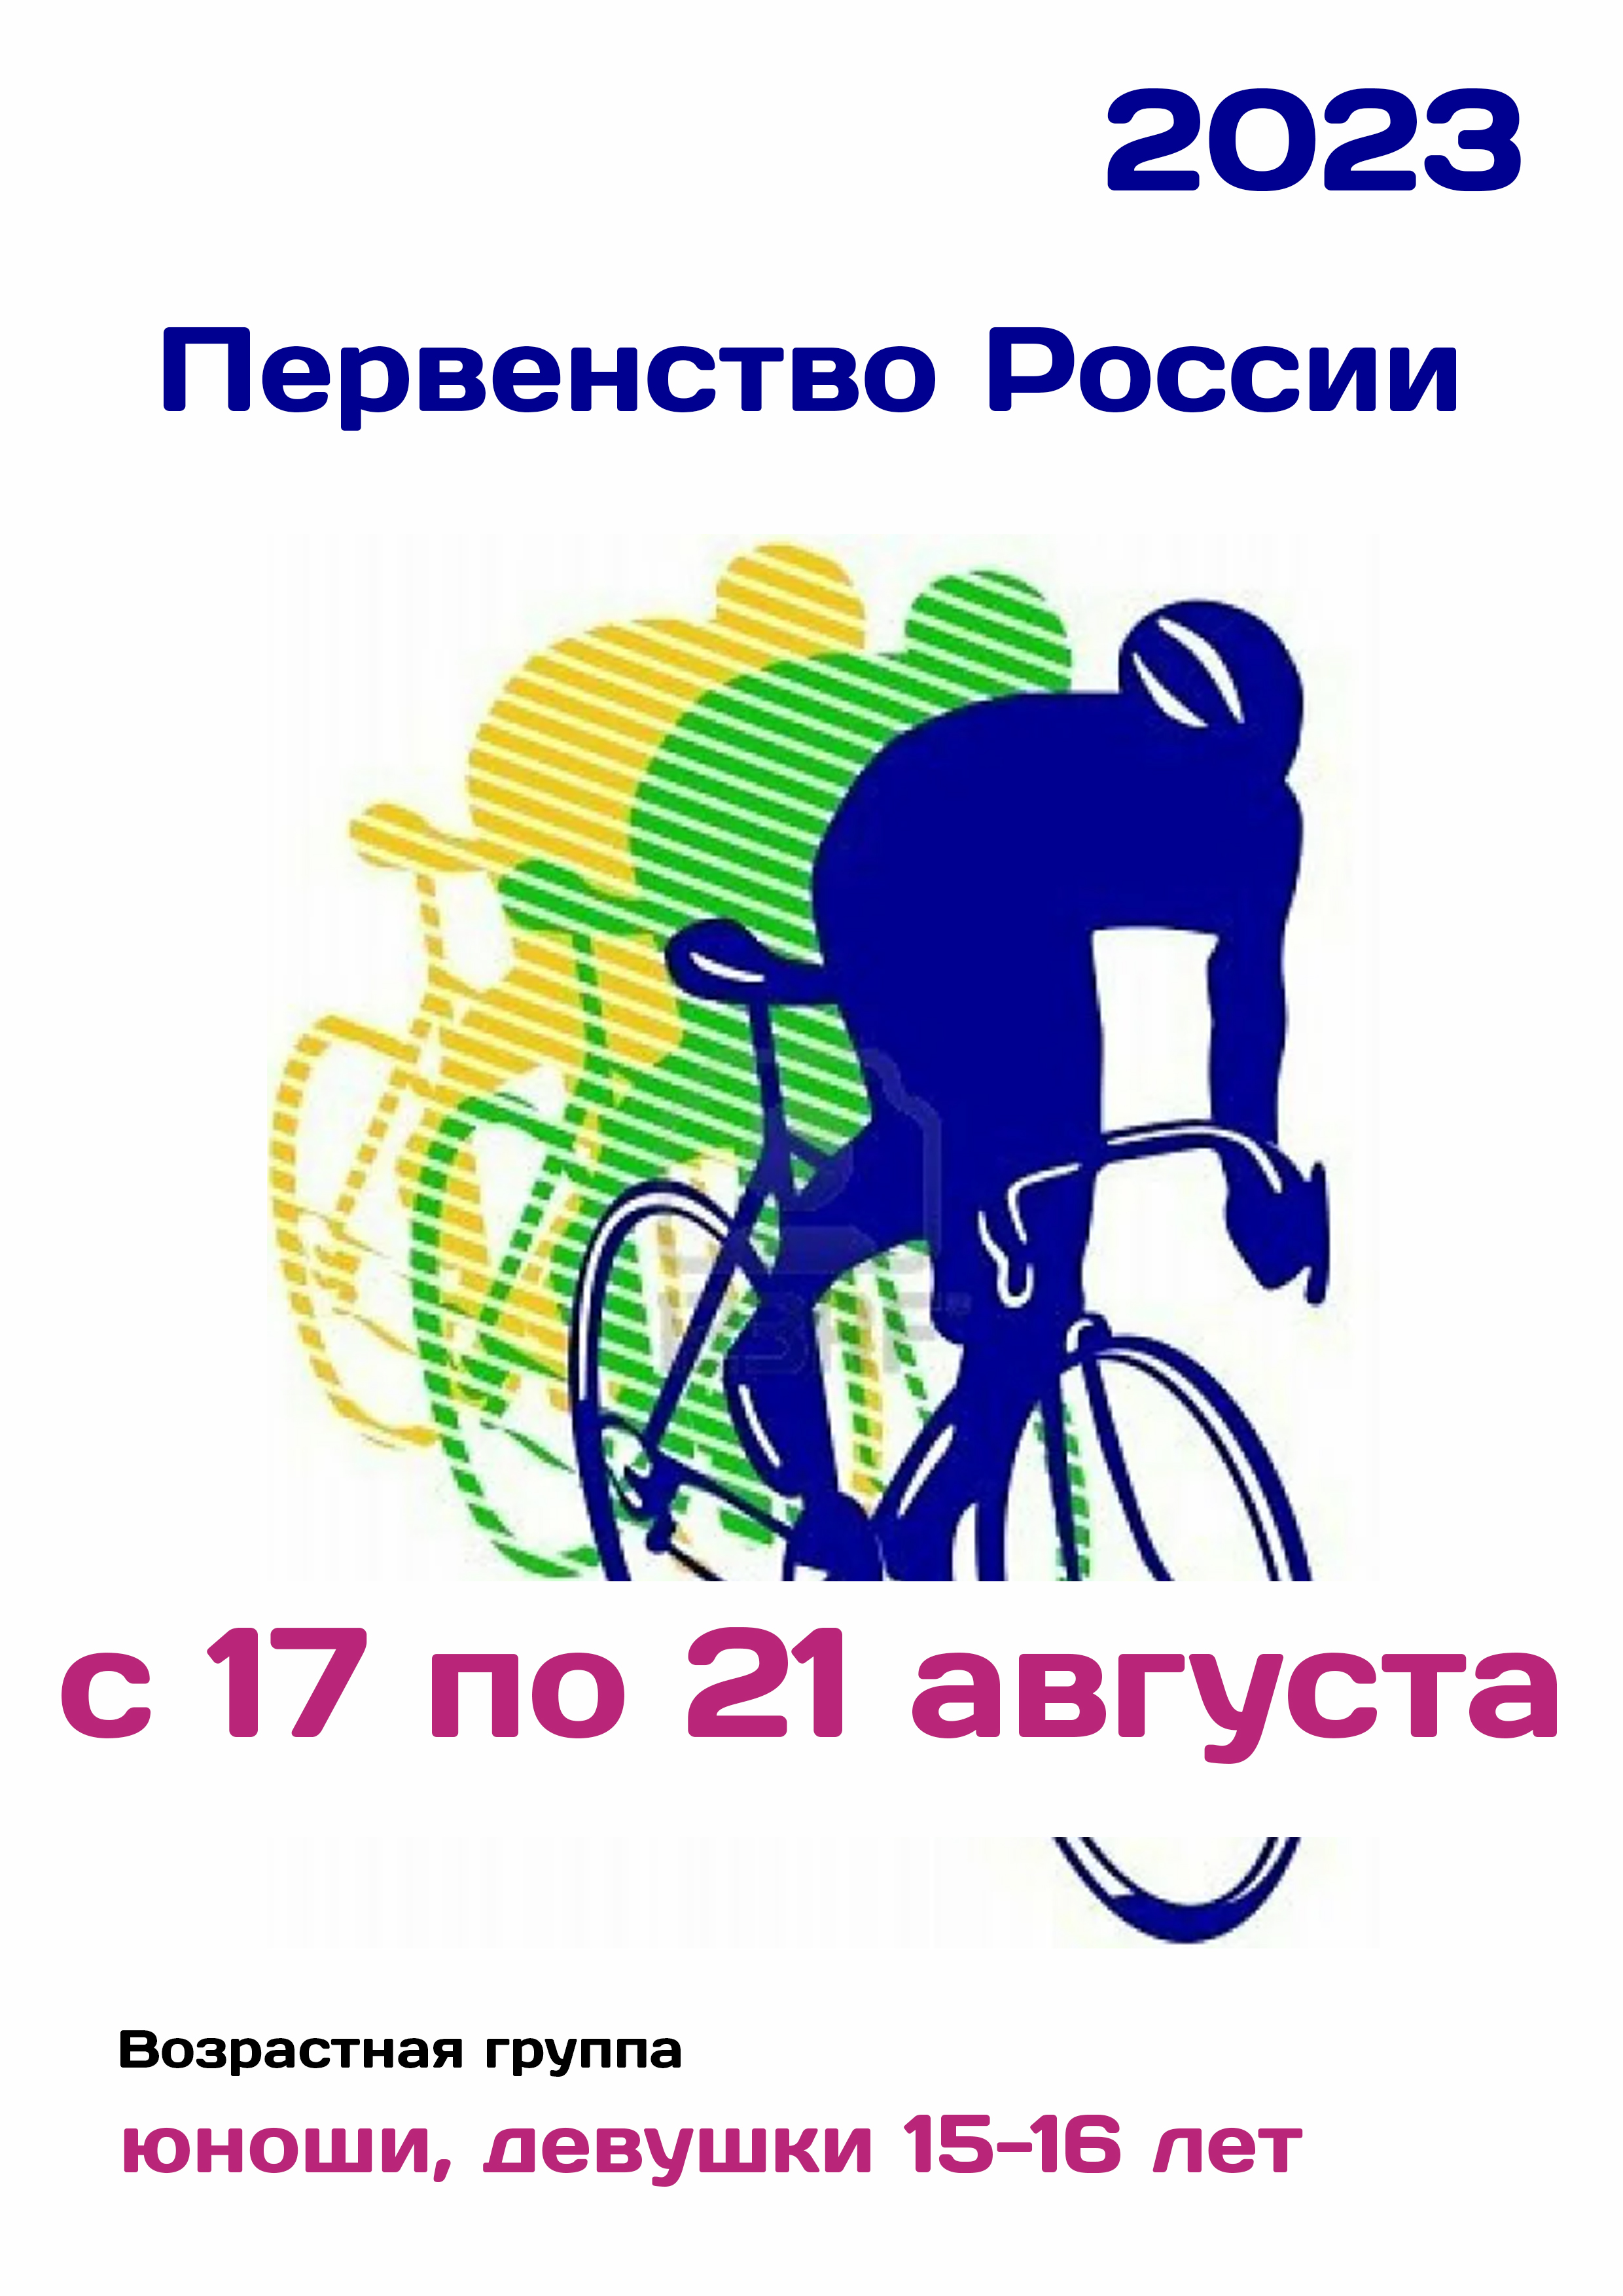 Первенство России по велоспорту 17  ogos
 2023  tahun
 